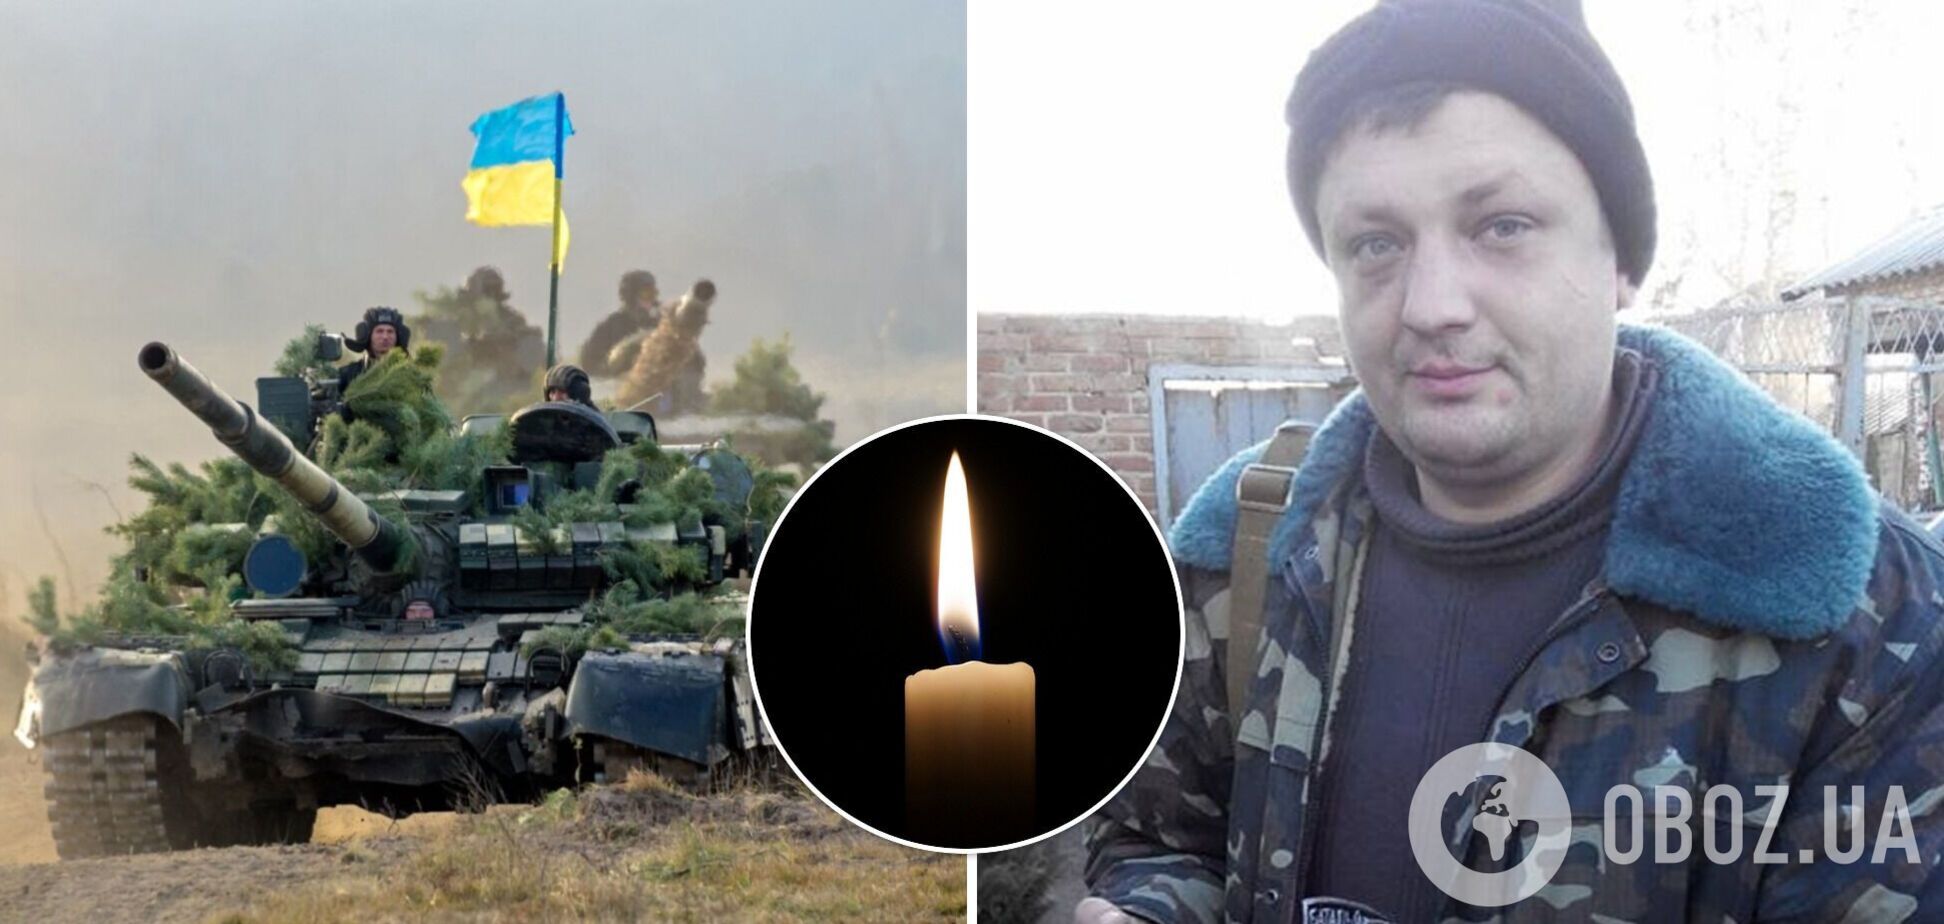 В боях за Украину погиб известный ветеран АТО Владимир Прохнич, который угрожал взорвать гранату в Кабмине. Фото